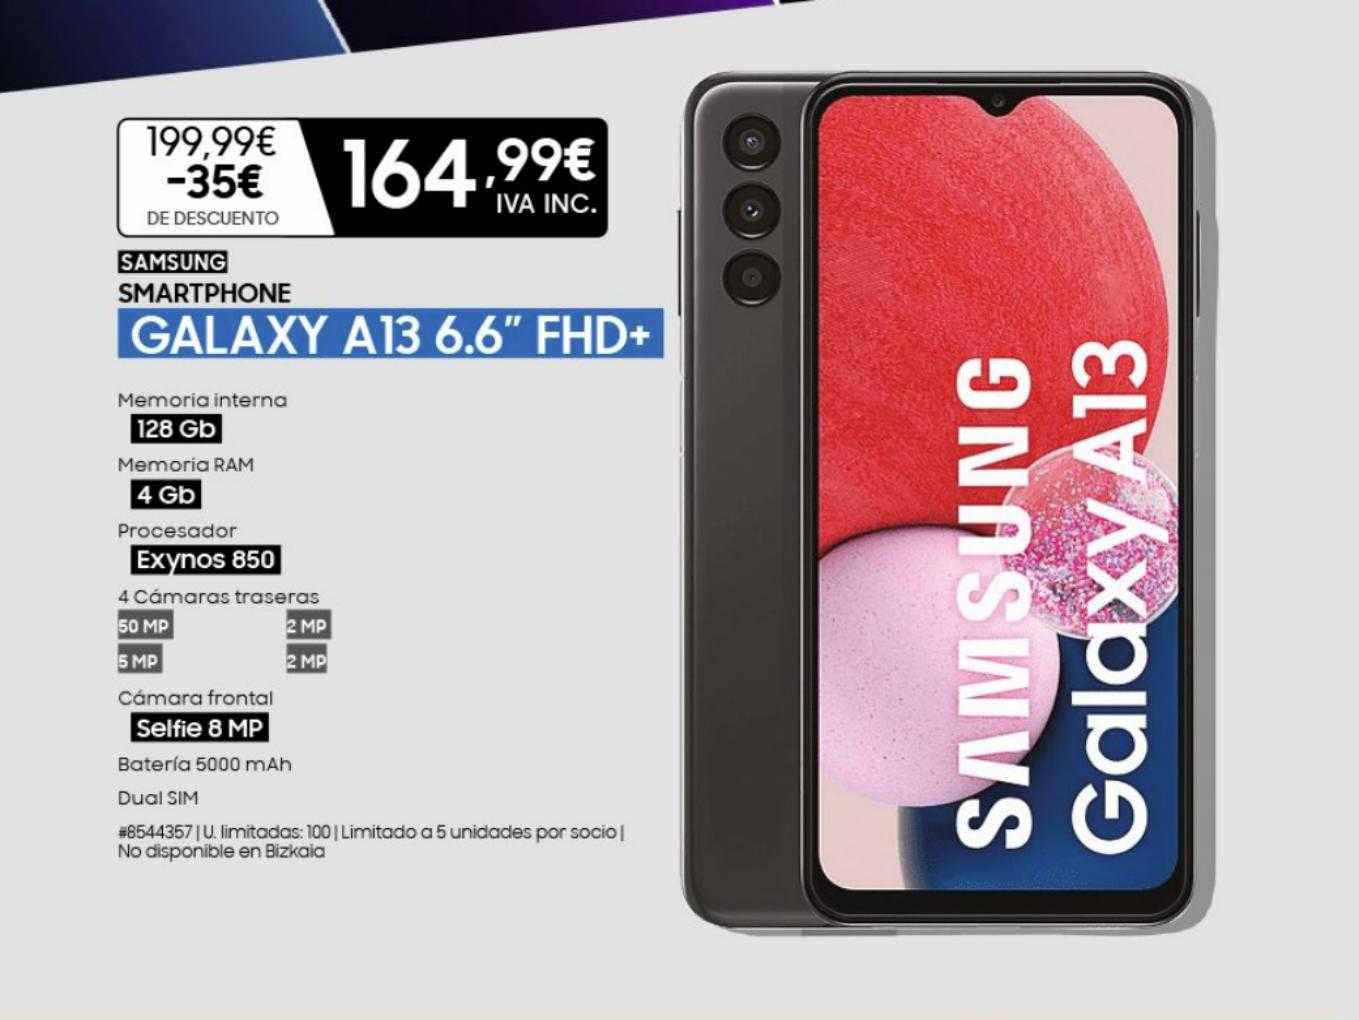 Costco Samsung Smartphone Galaxy A13 6.6